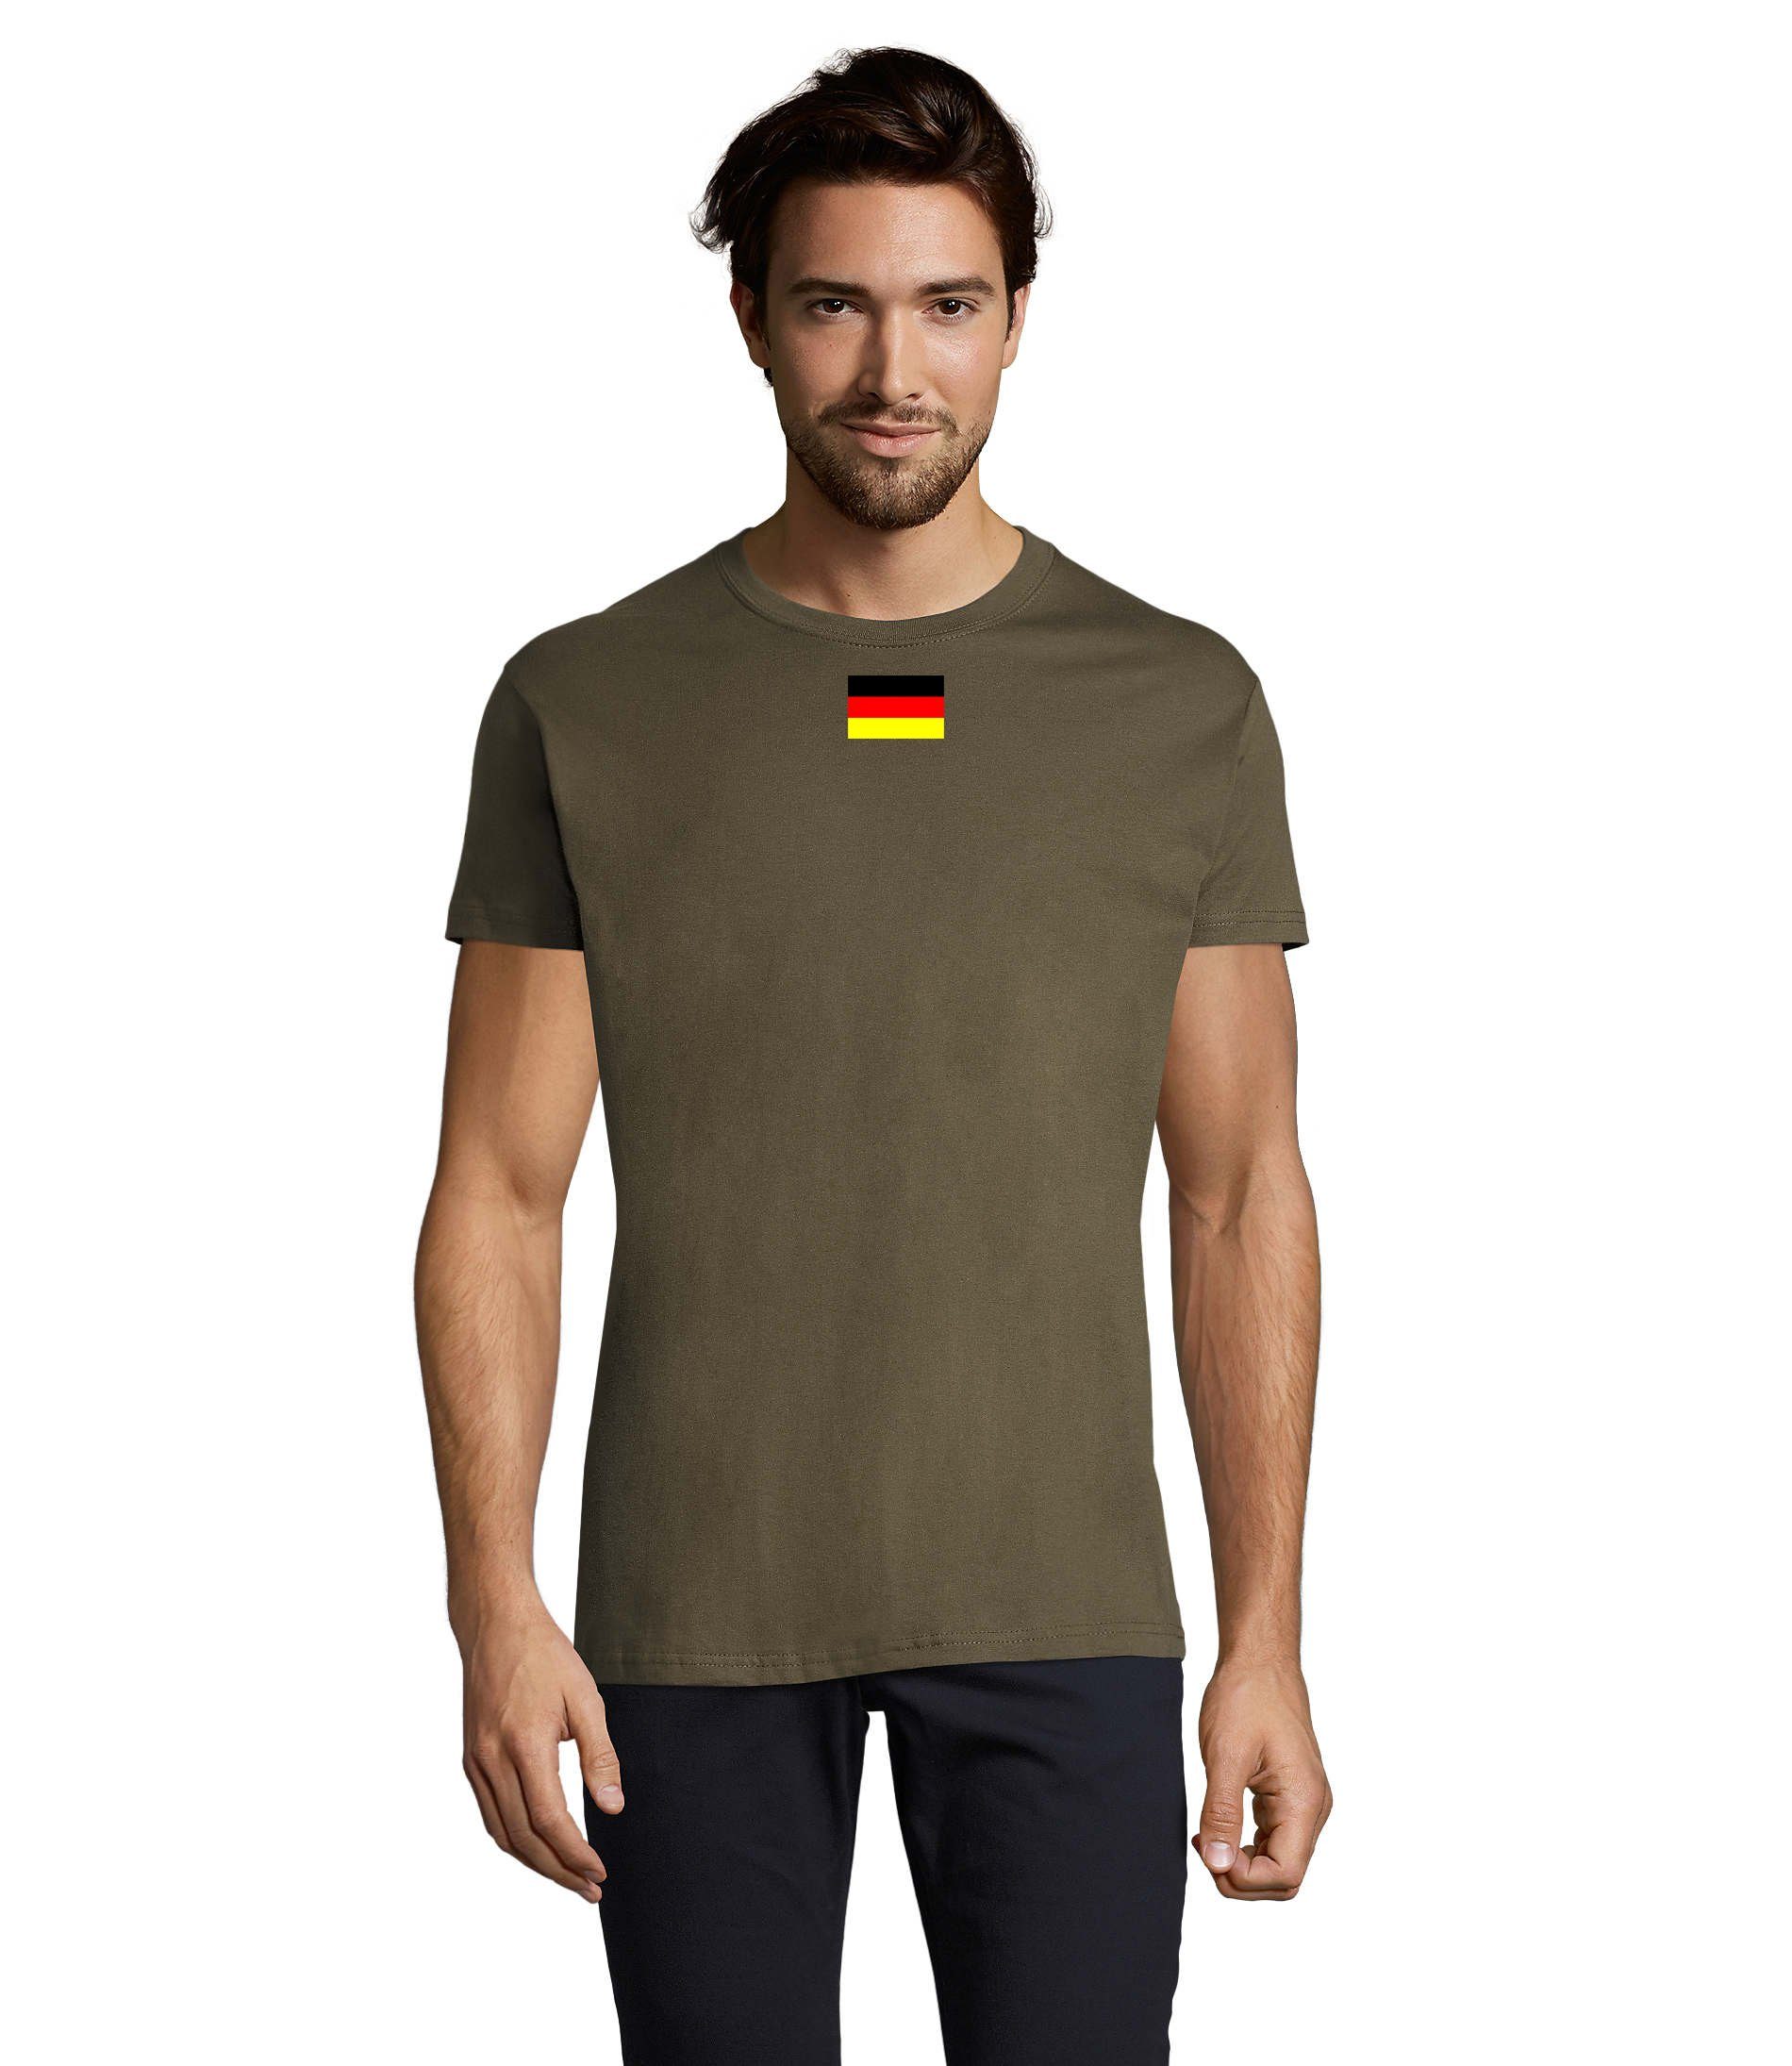 Blondie & Brownie Germany Armee Army Ukraine Nato T-Shirt USA Herren Deutschland Nation